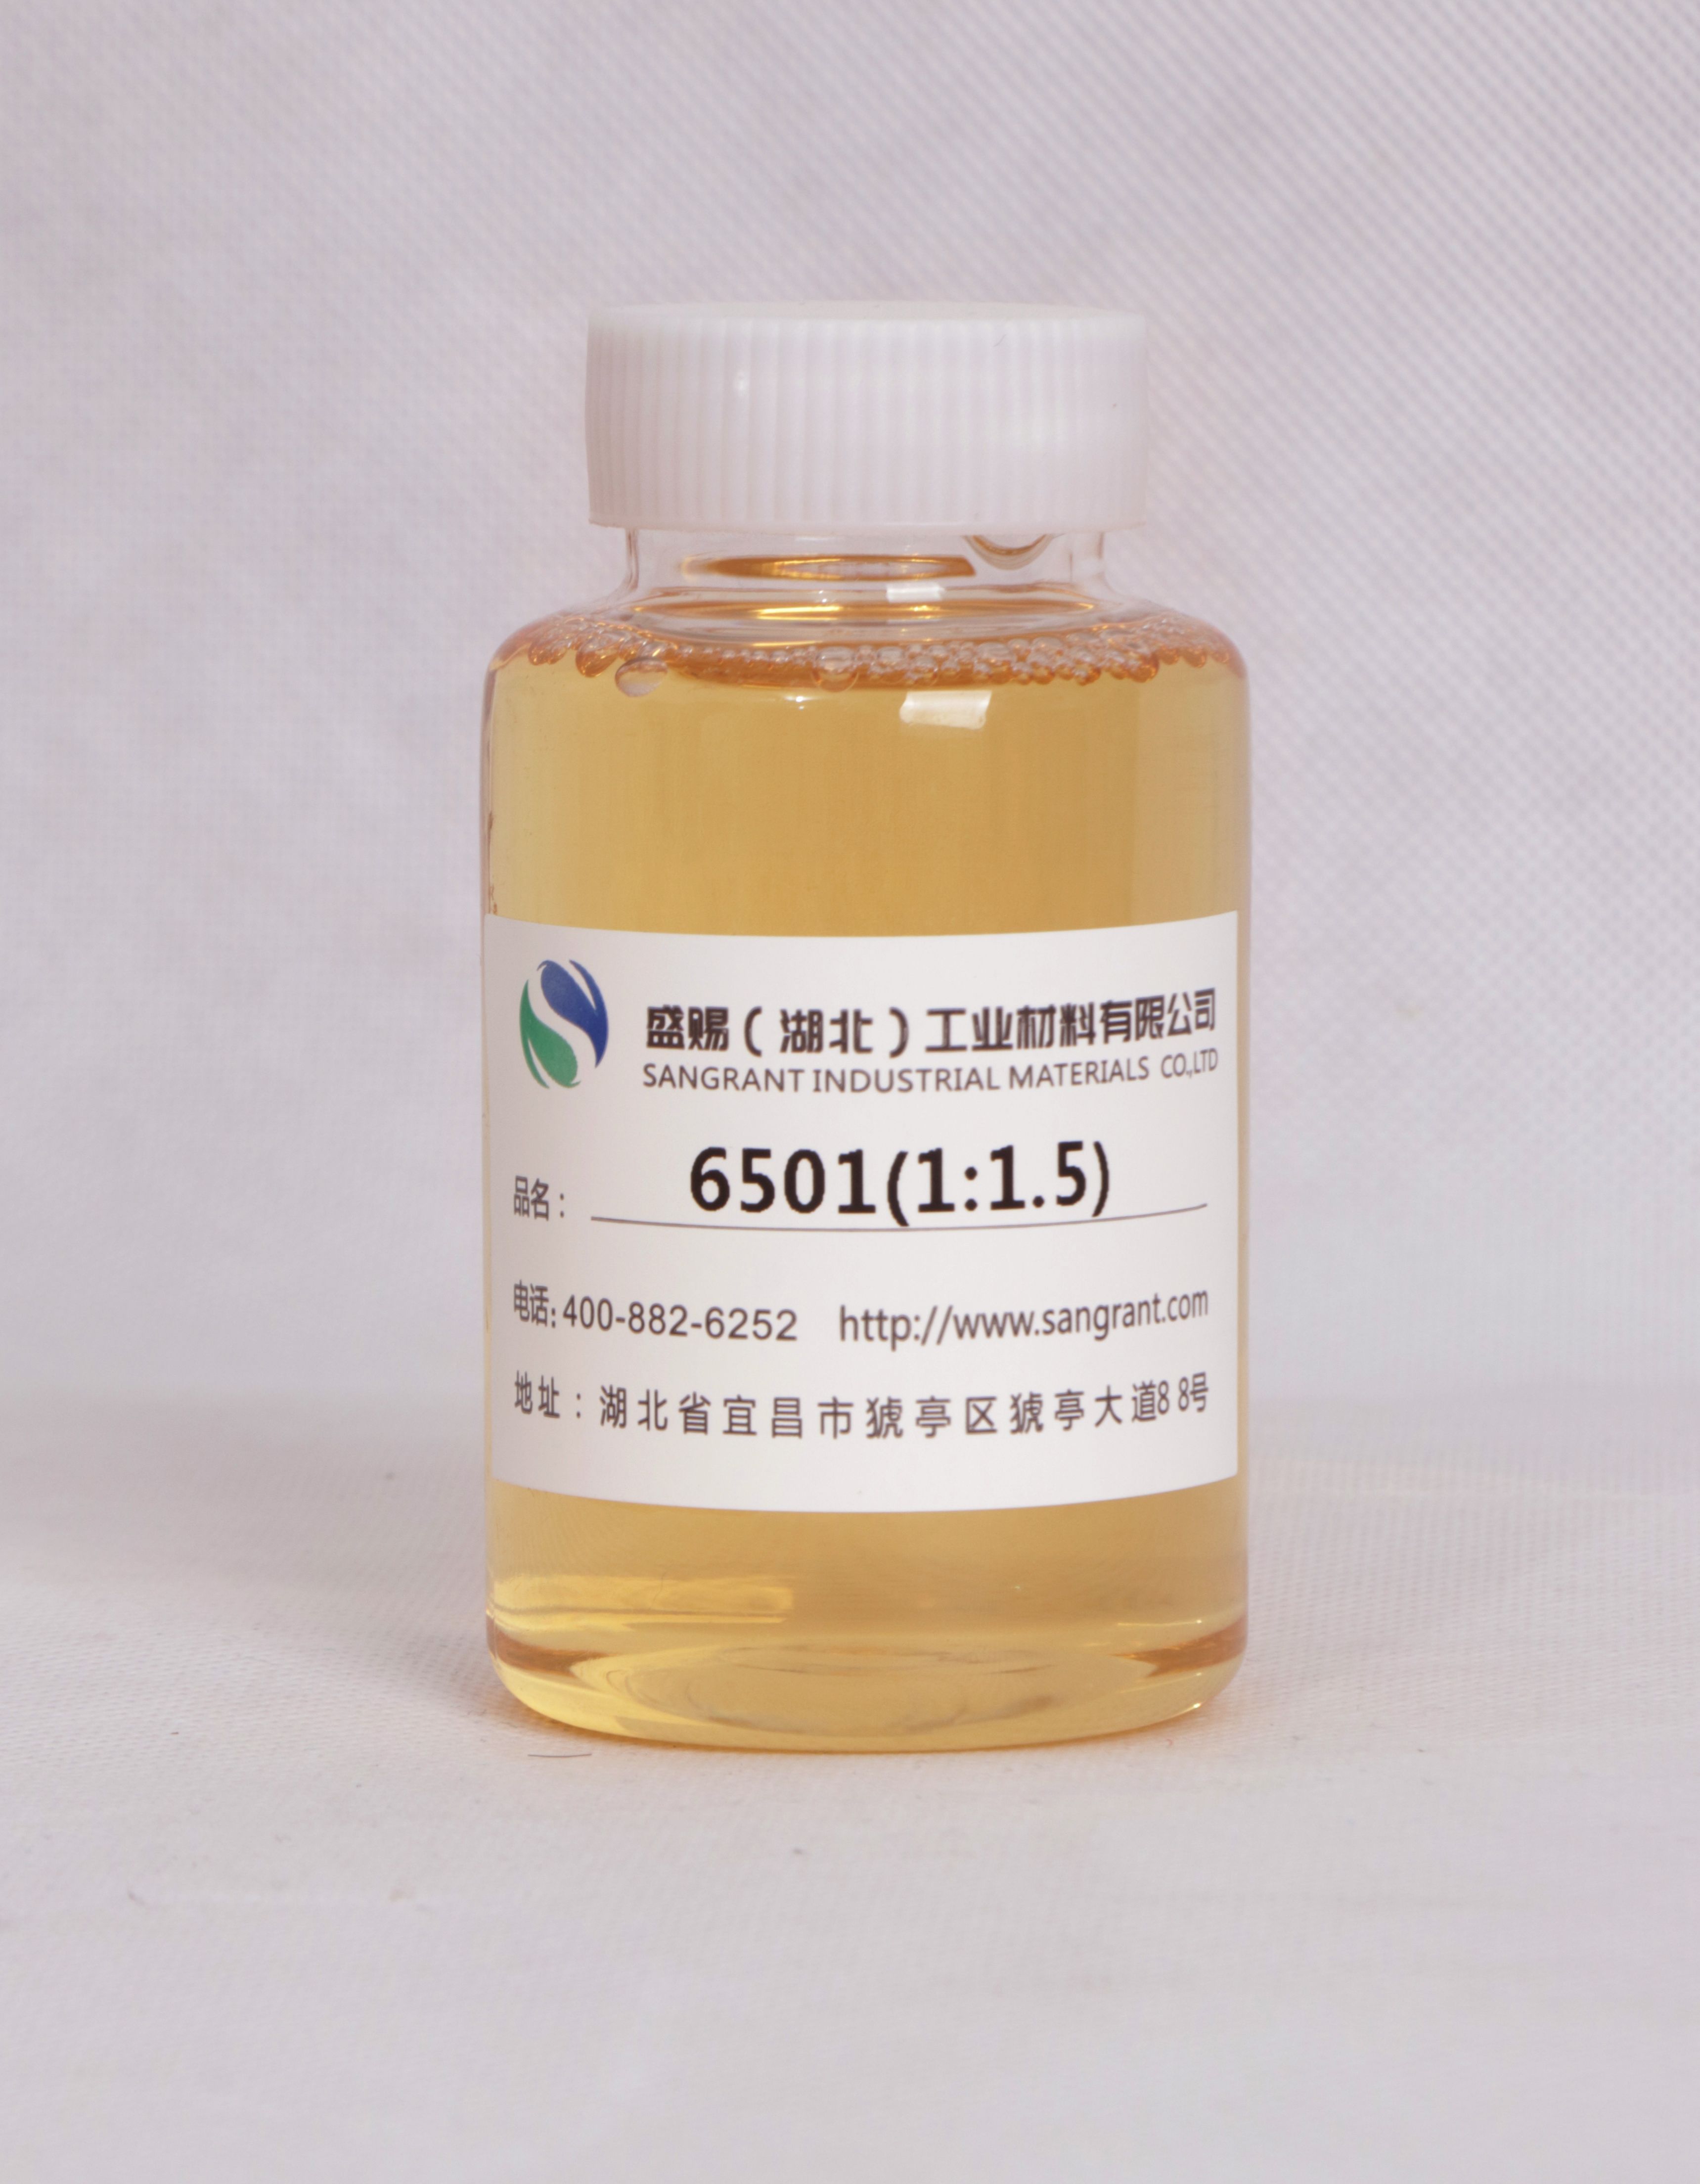 盛赐 椰子油脂肪酸二乙醇酰胺 6501 1:1.5 日化增稠、纺织助剂乳化剂 质量稳定